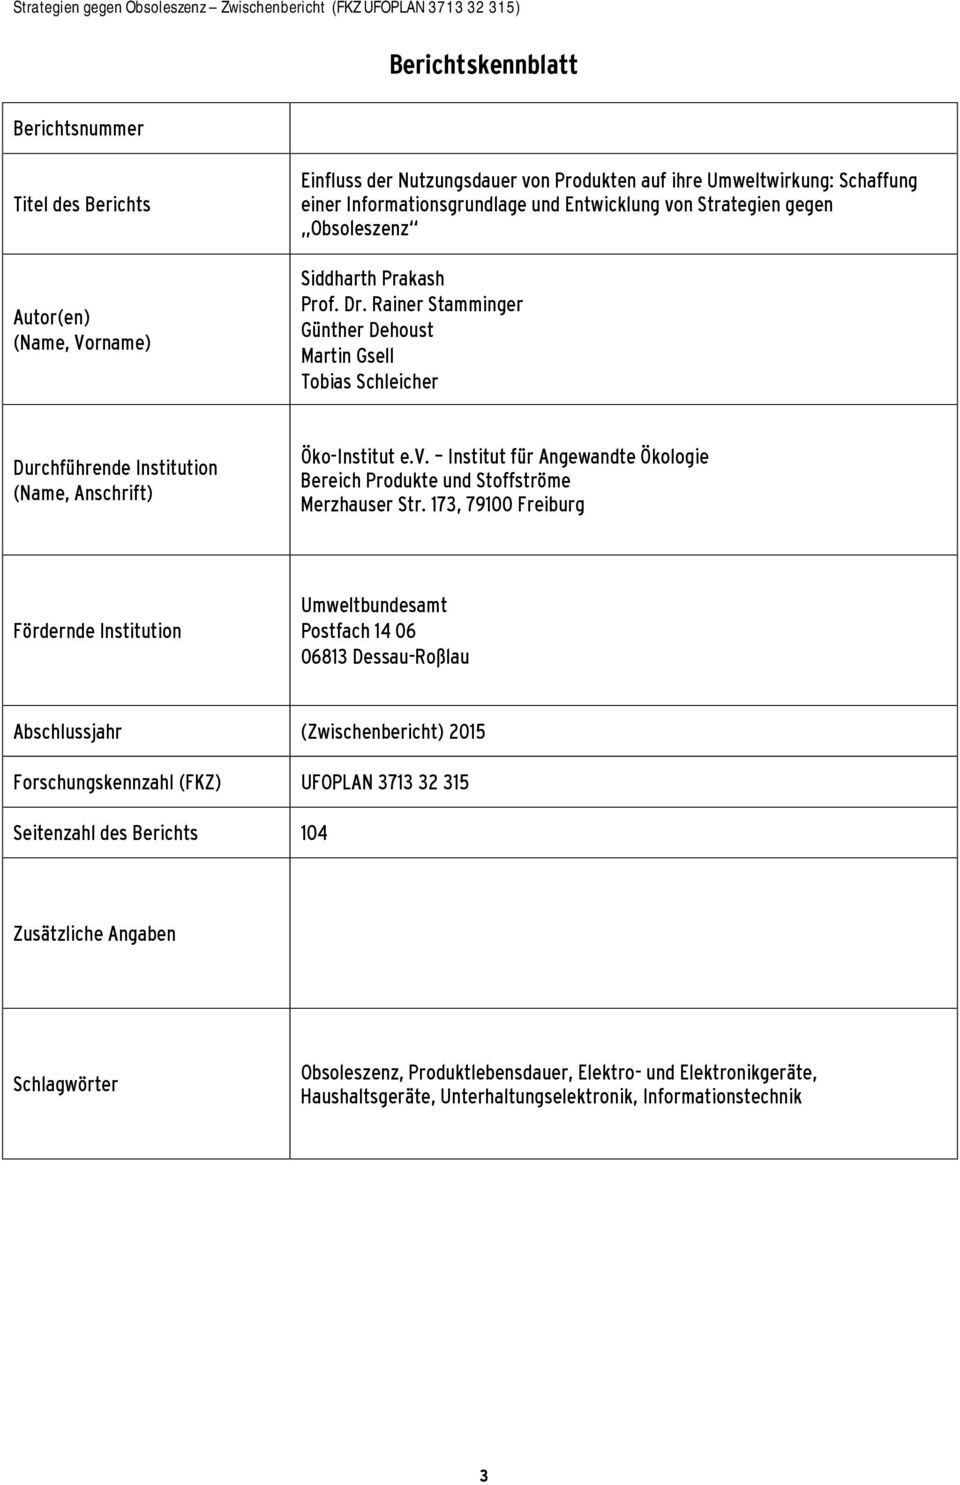 173, 79100 Freiburg Fördernde Institution Umweltbundesamt Postfach 14 06 06813 Dessau-Roßlau Abschlussjahr (Zwischenbericht) 2015 Forschungskennzahl (FKZ) UFOPLAN 3713 32 315 Seitenzahl des Berichts